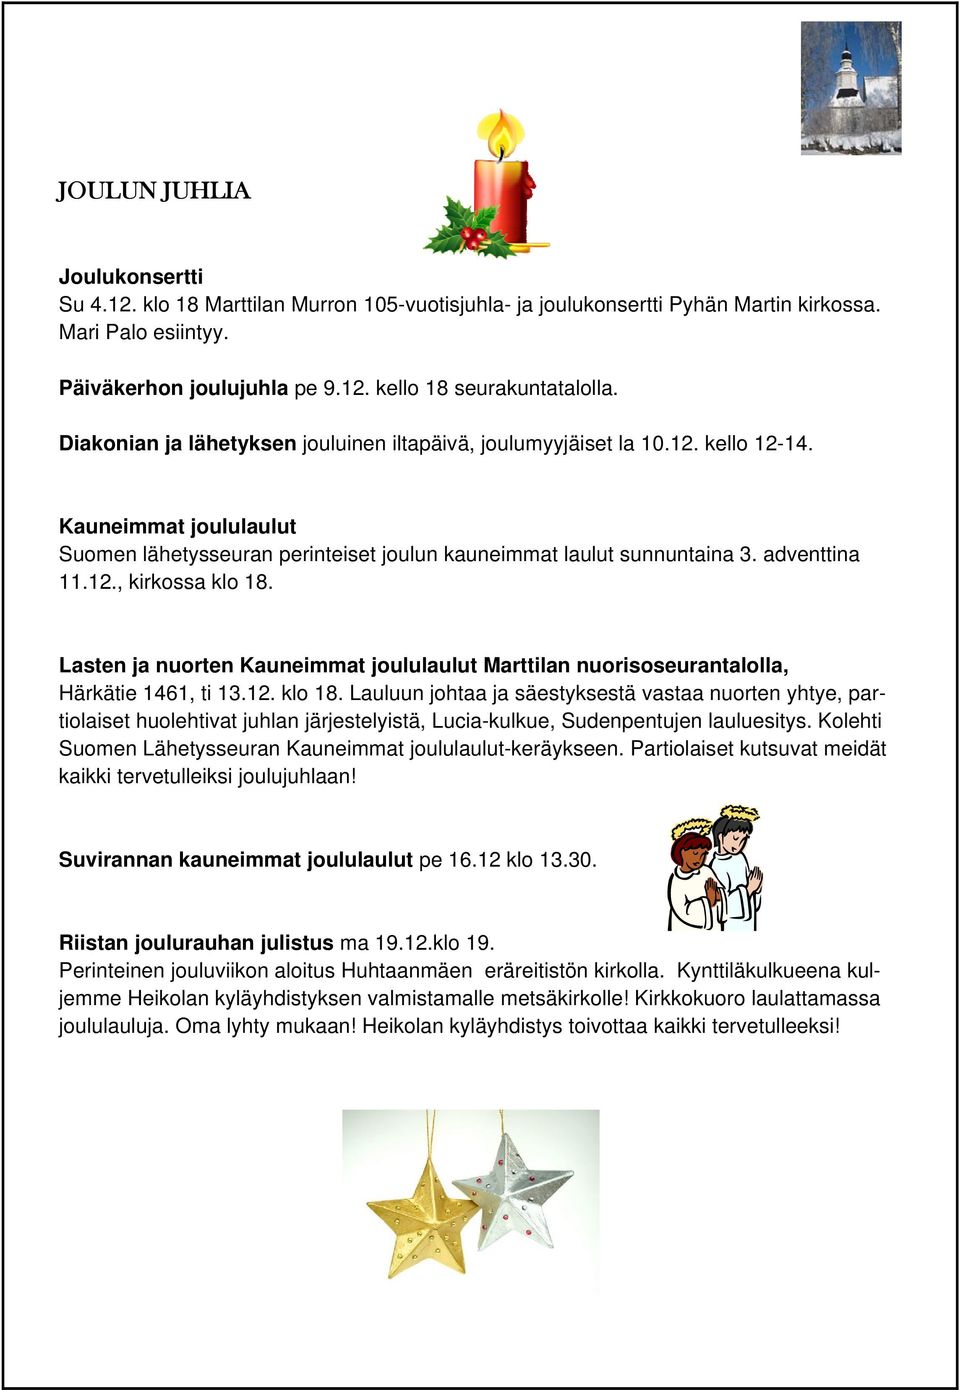 Lasten ja nuorten Kauneimmat joululaulut Marttilan nuorisoseurantalolla, Härkätie 1461, ti 13.12. klo 18.